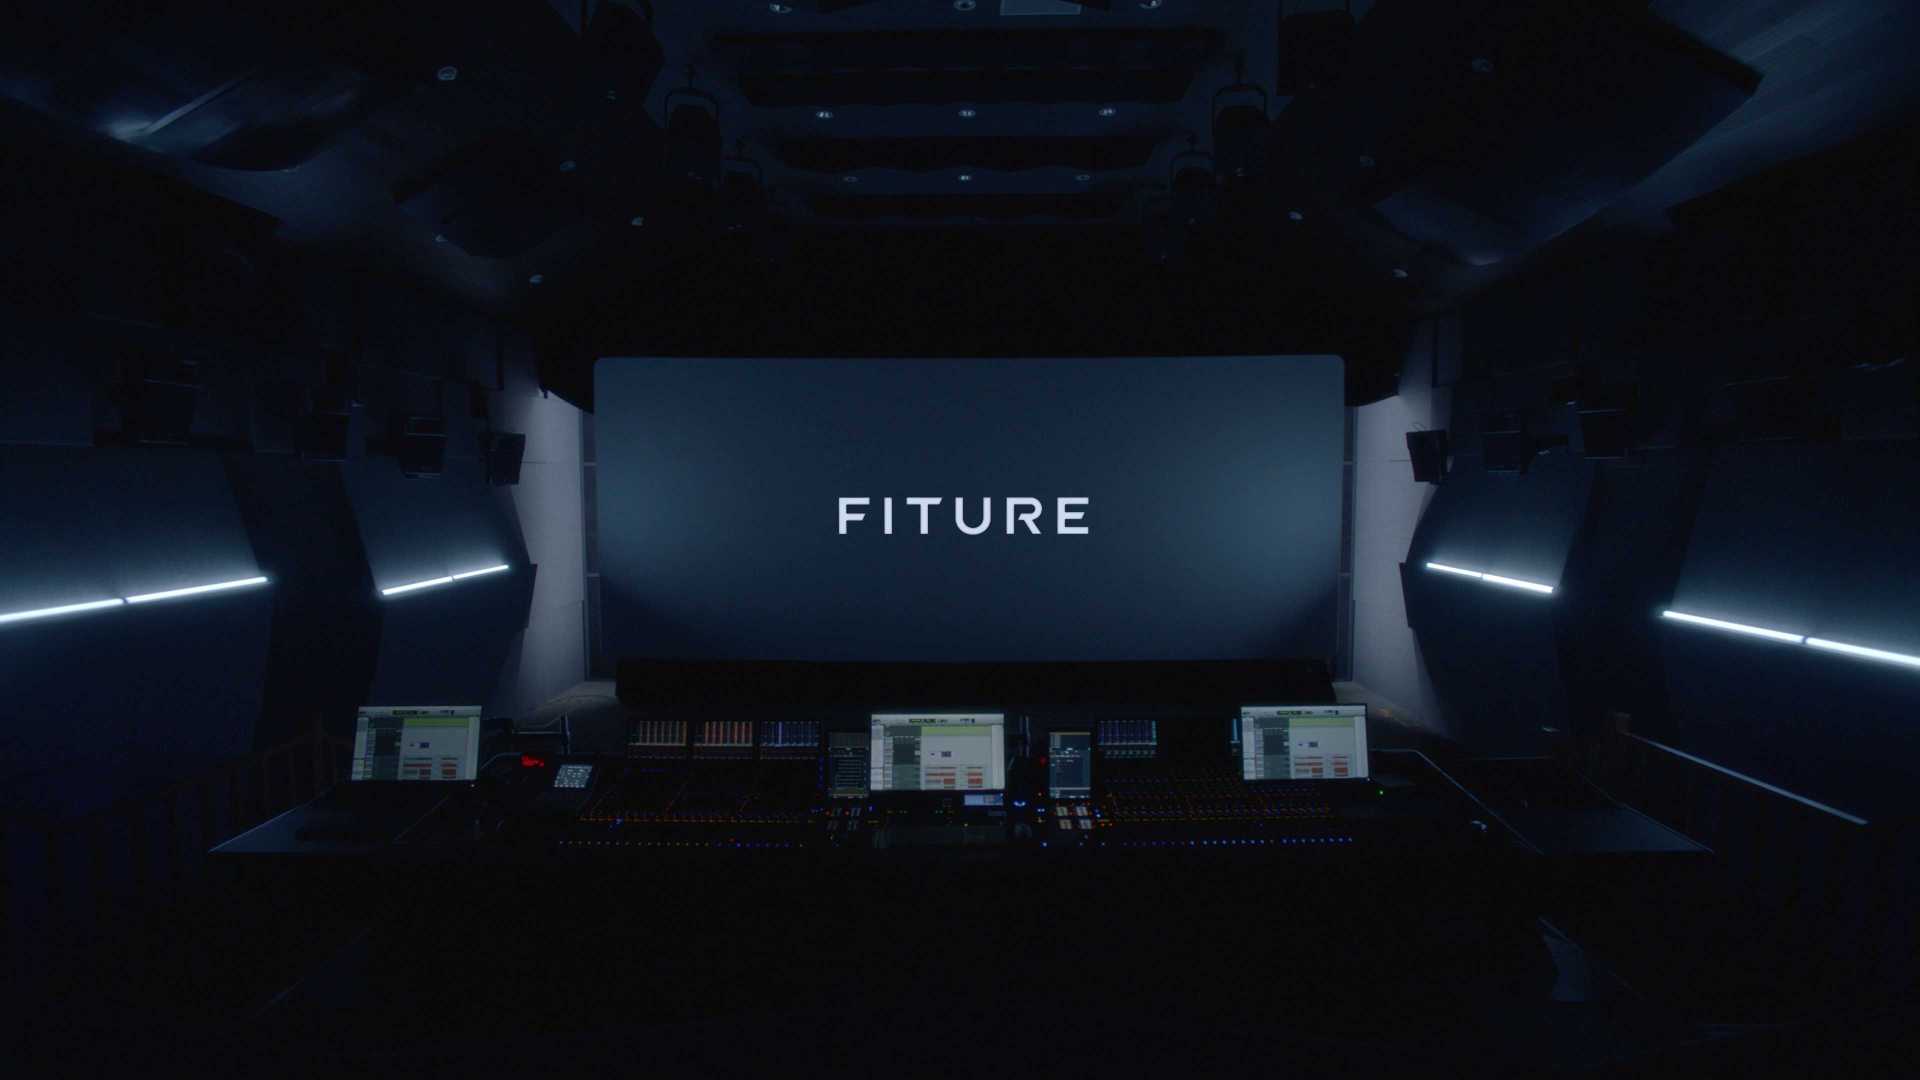 FITURE拟合未来 内容梦工厂